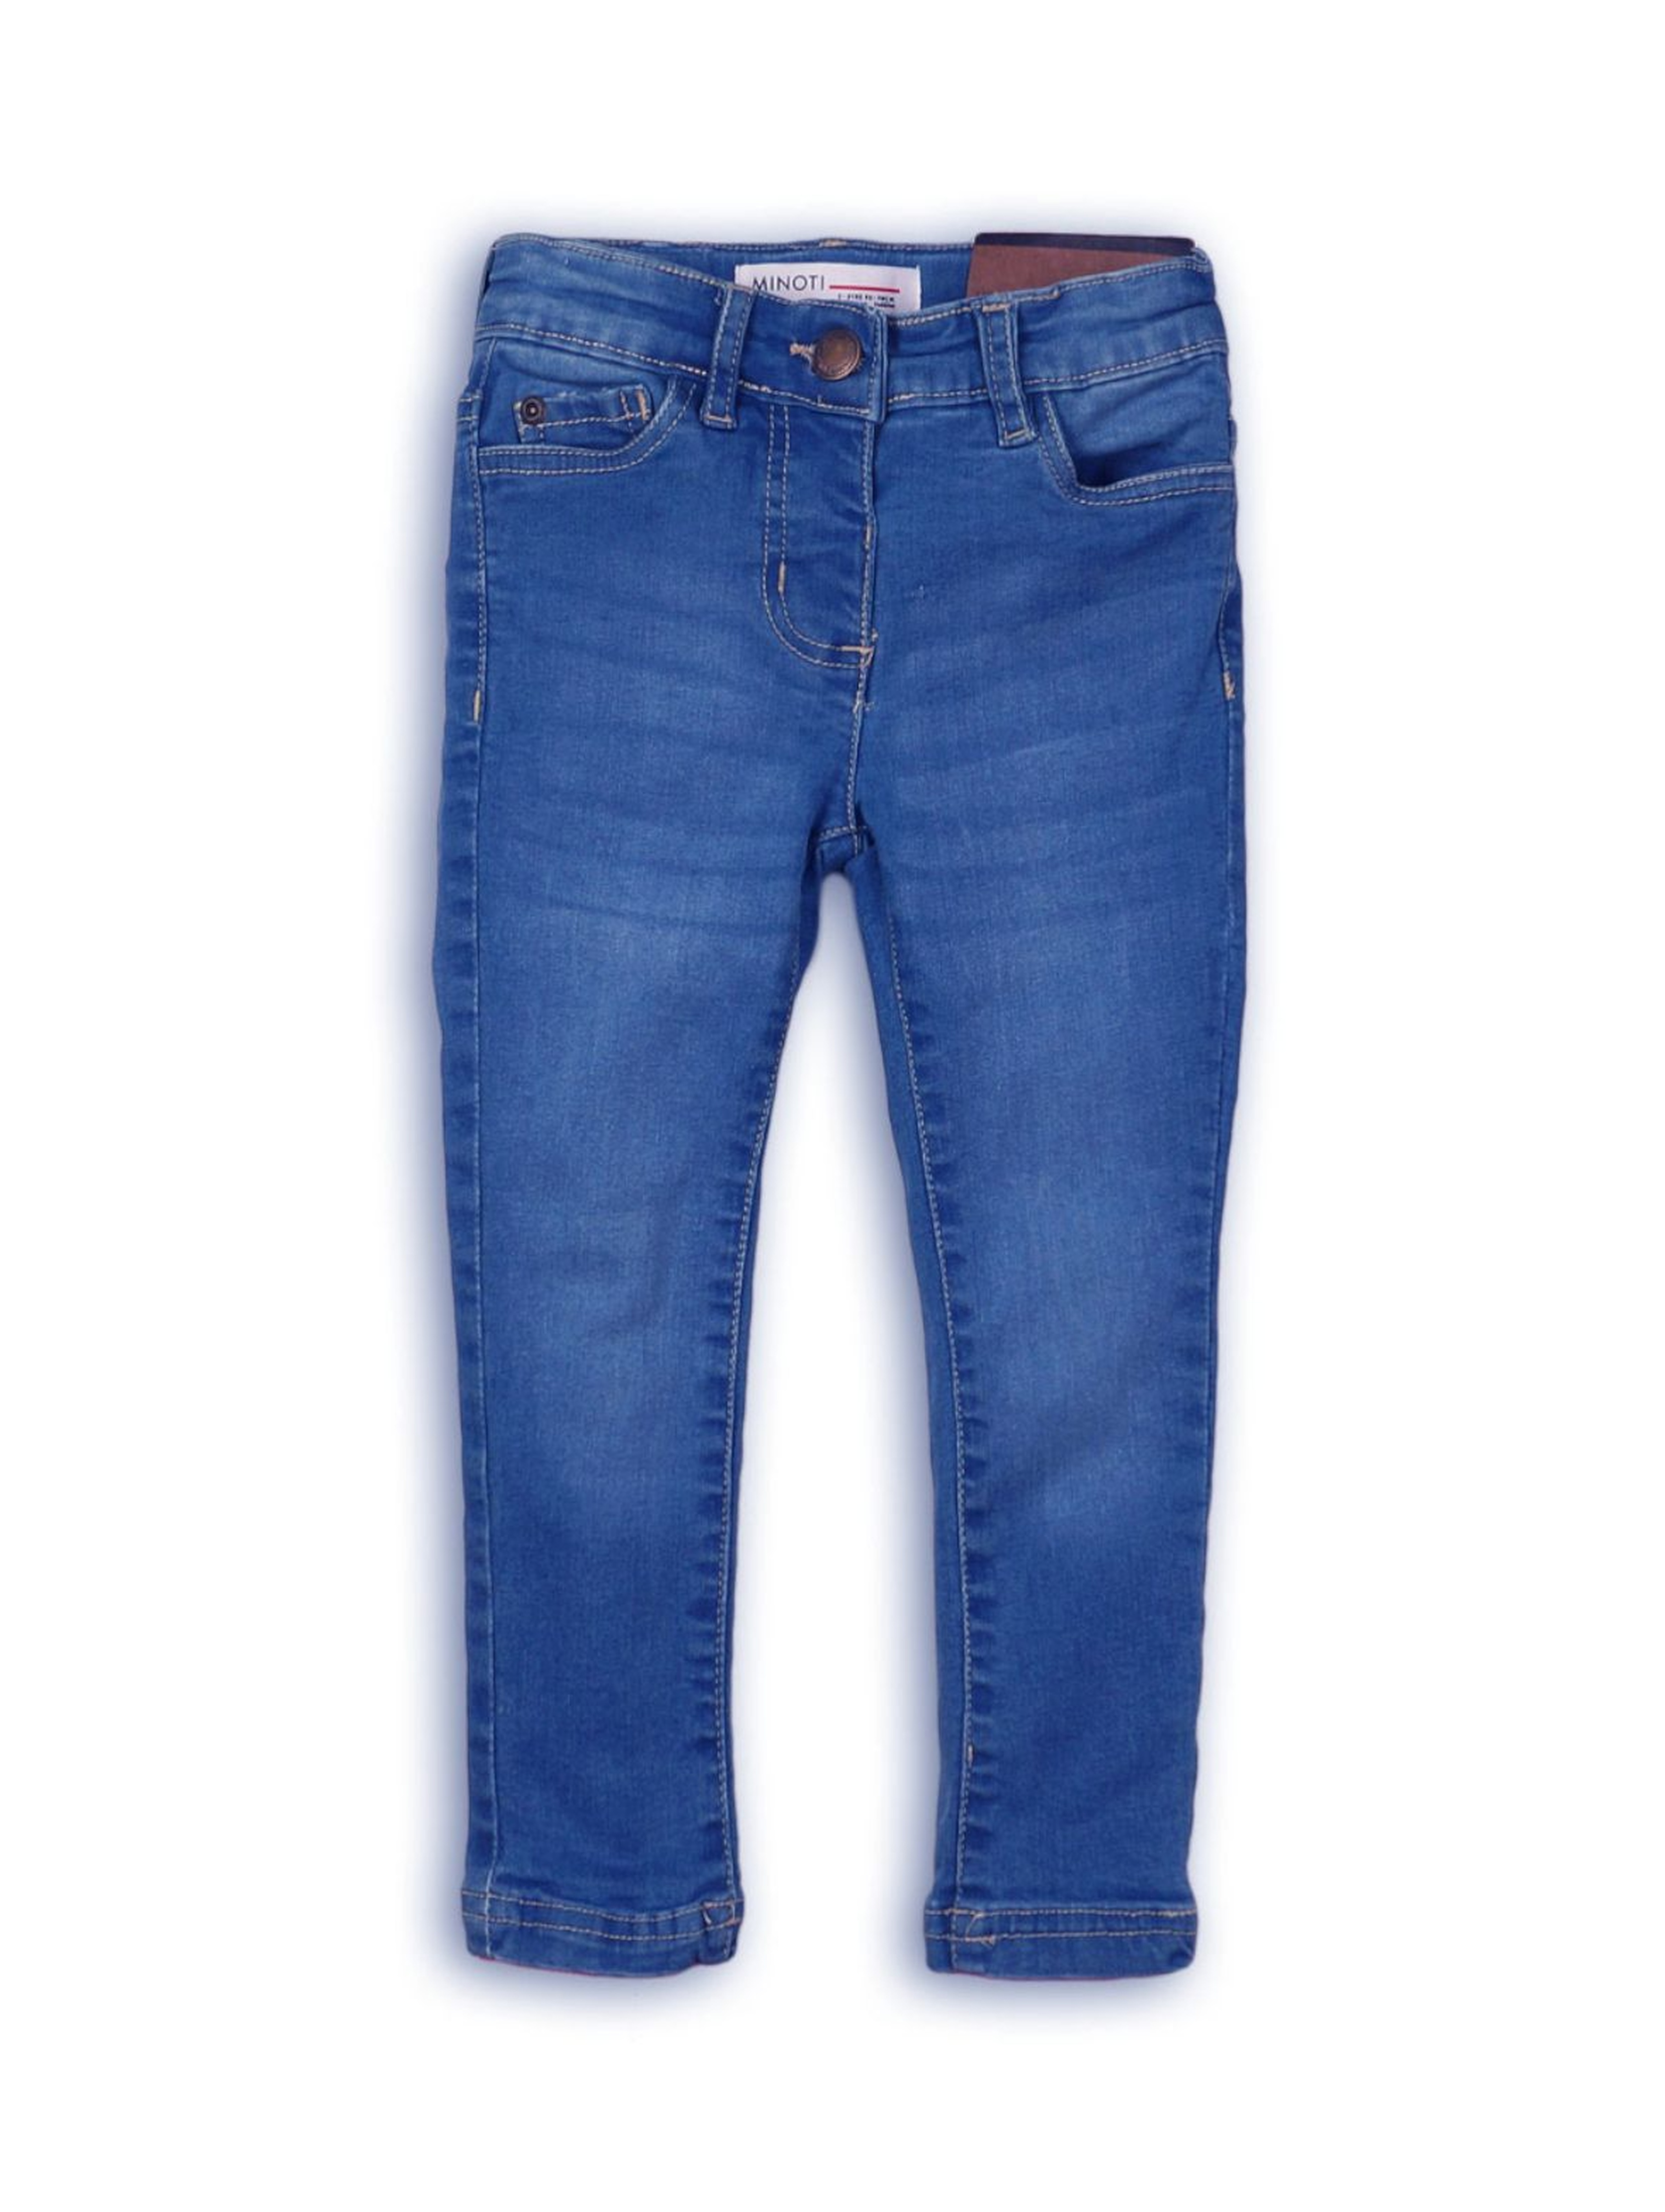 Spodnie dziewczęce jeansowe-niebieskie